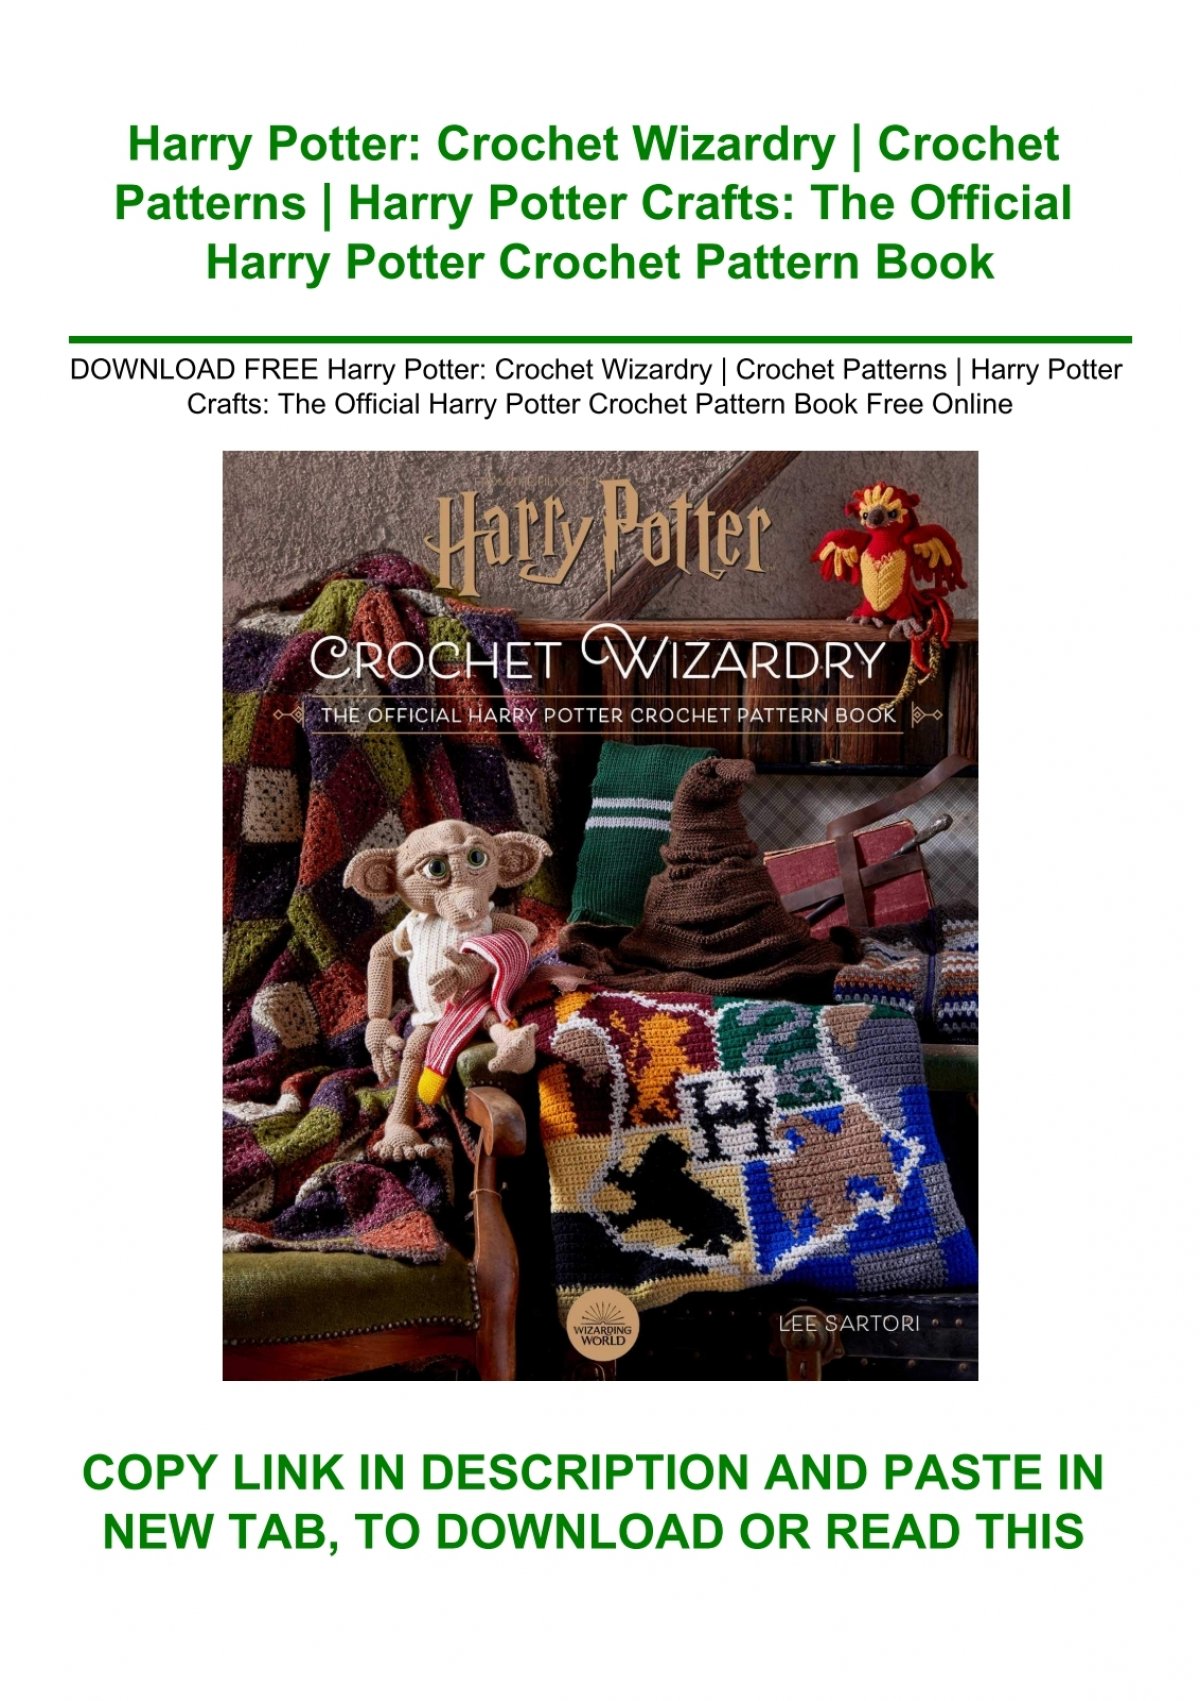 DOWNLOAD FREE Harry Potter Crochet Wizardry Crochet Patterns Harry